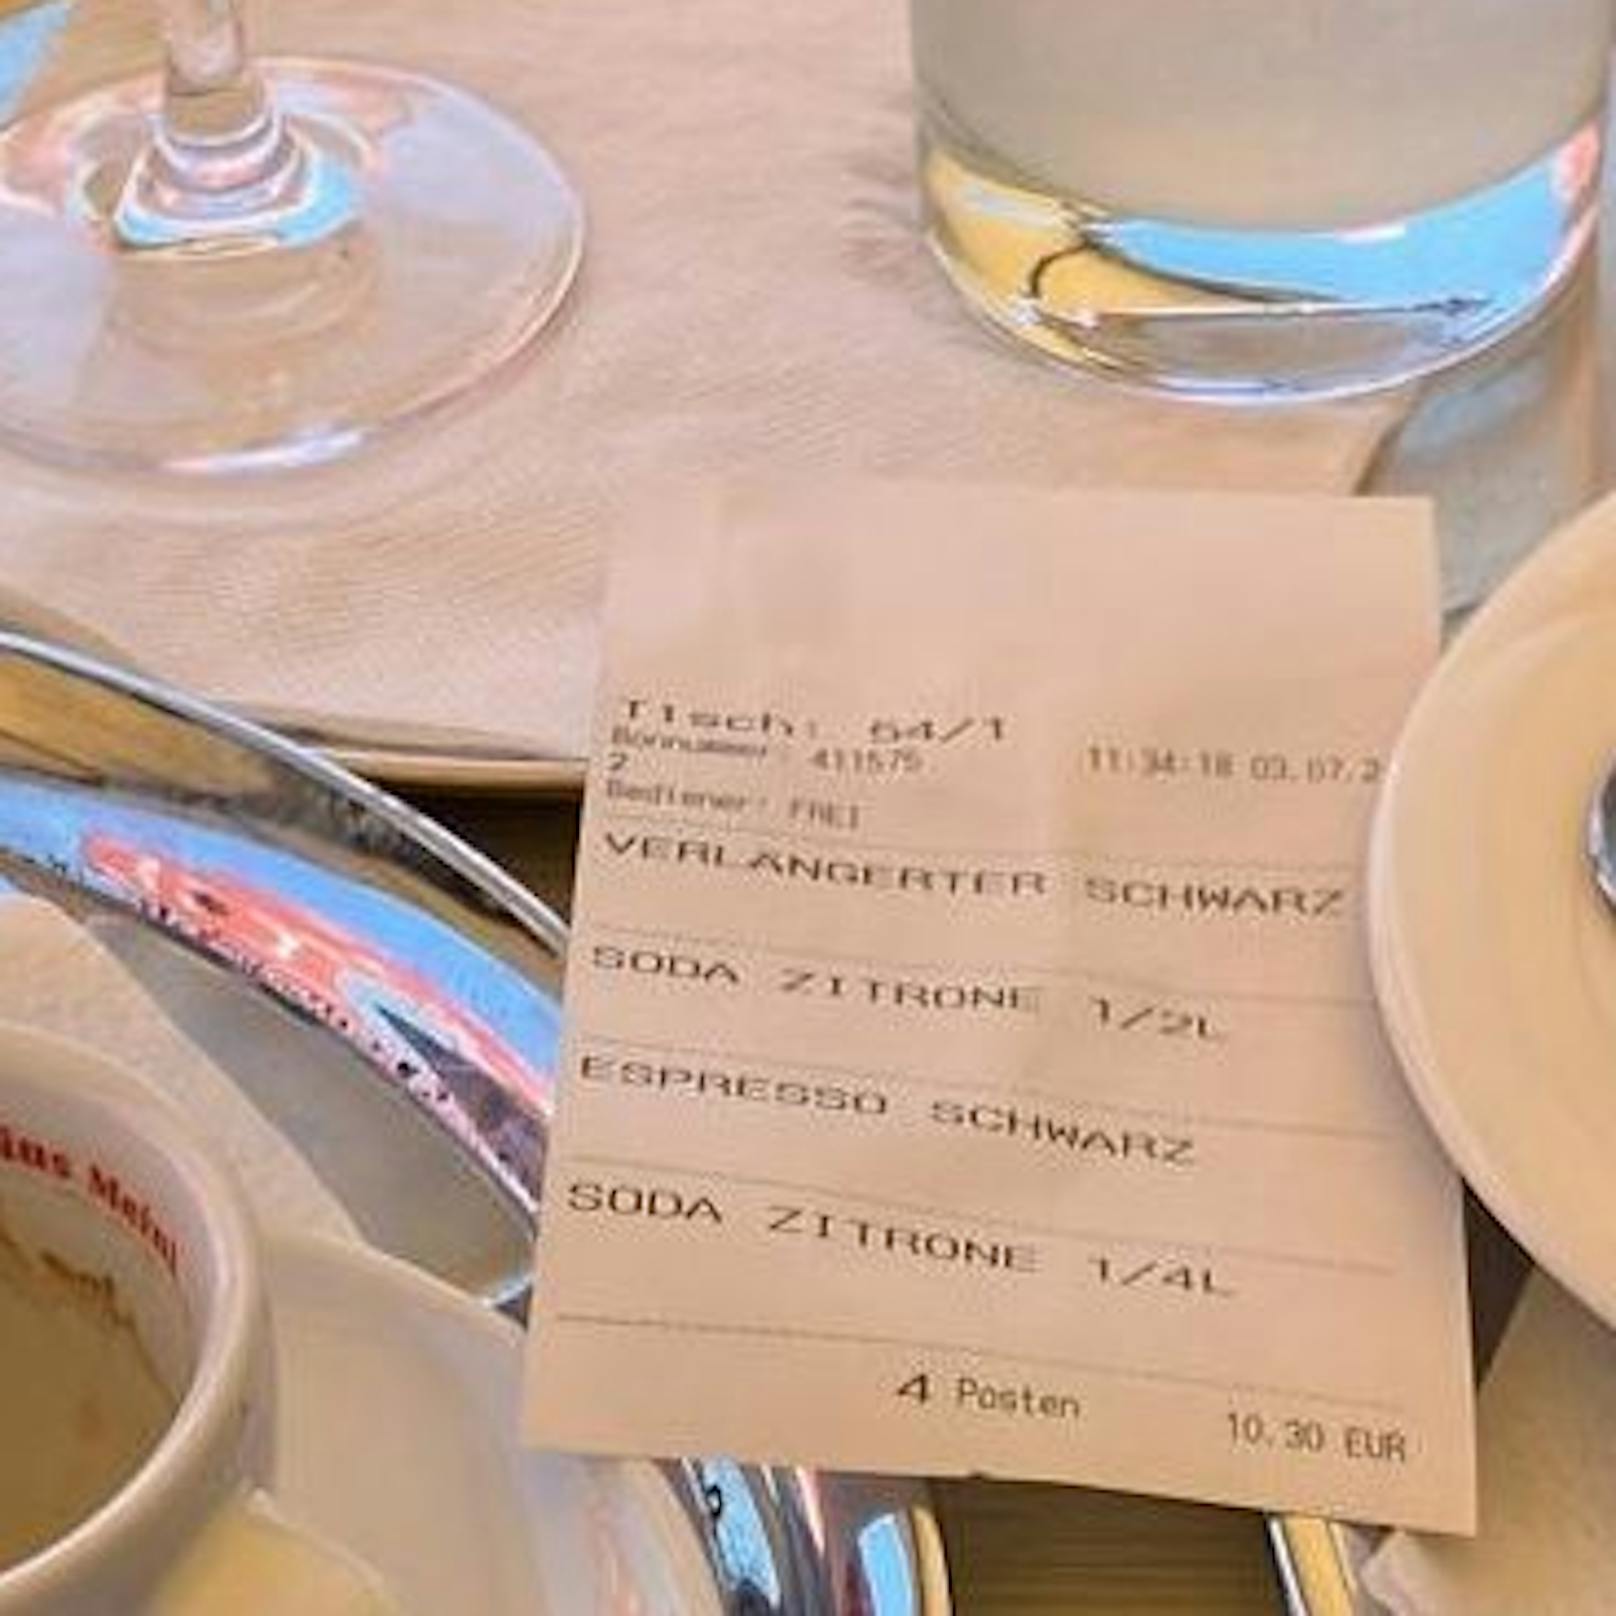 Für zwei Kaffee und zwei Soda-Zitron zahlte Daniel nur 10,30 Euro.